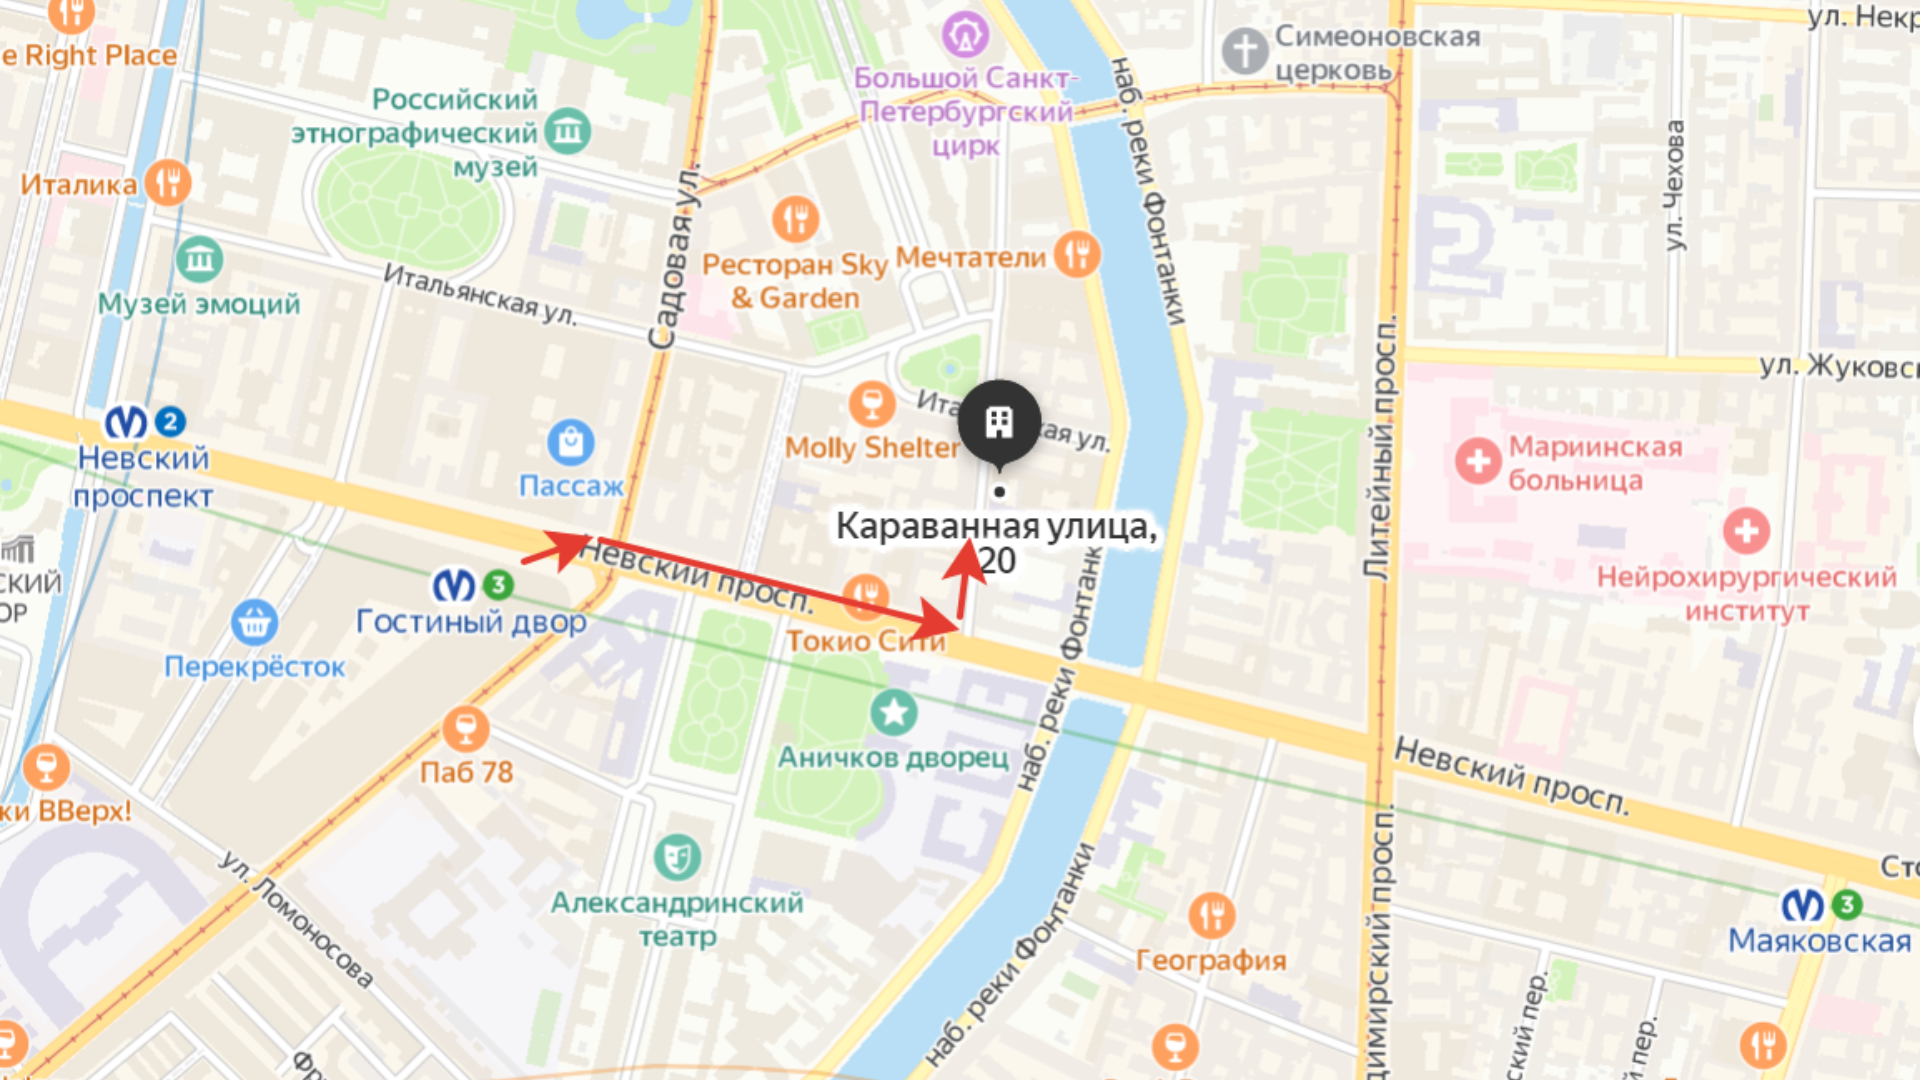 Схема проезда к Куйбышевскому районному суду Спб